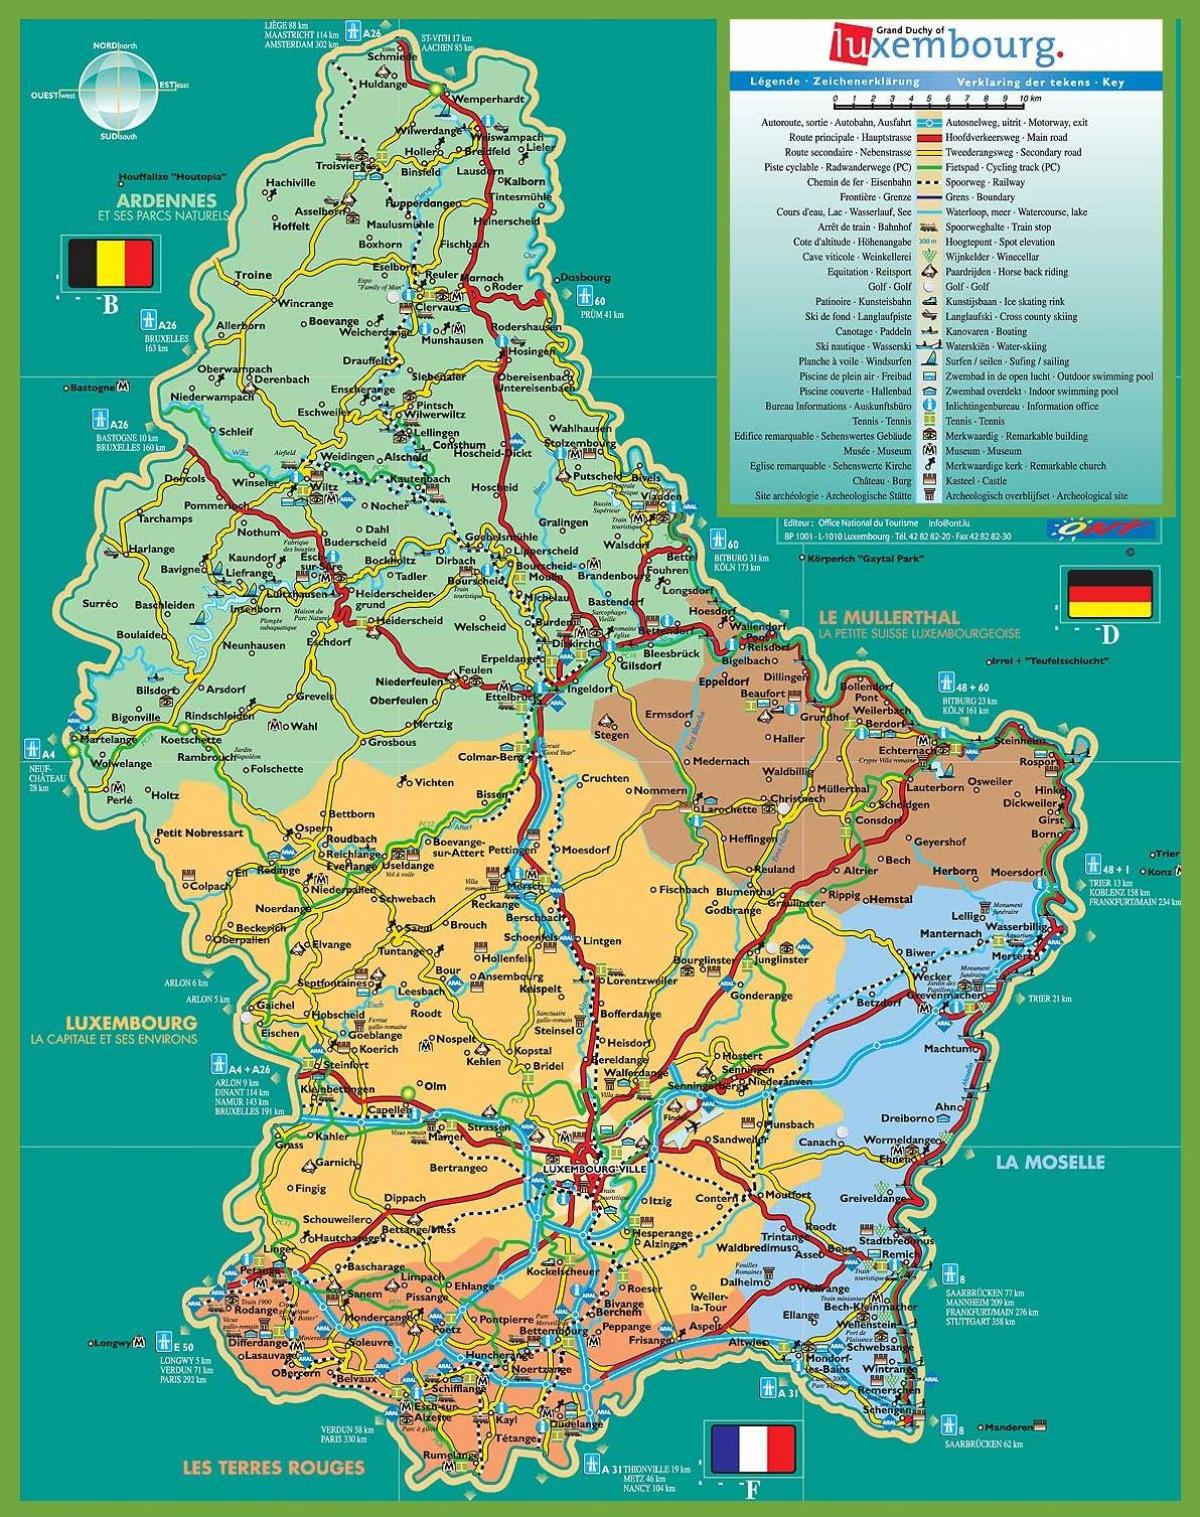 Luksemburgu qytetit hartën turistike